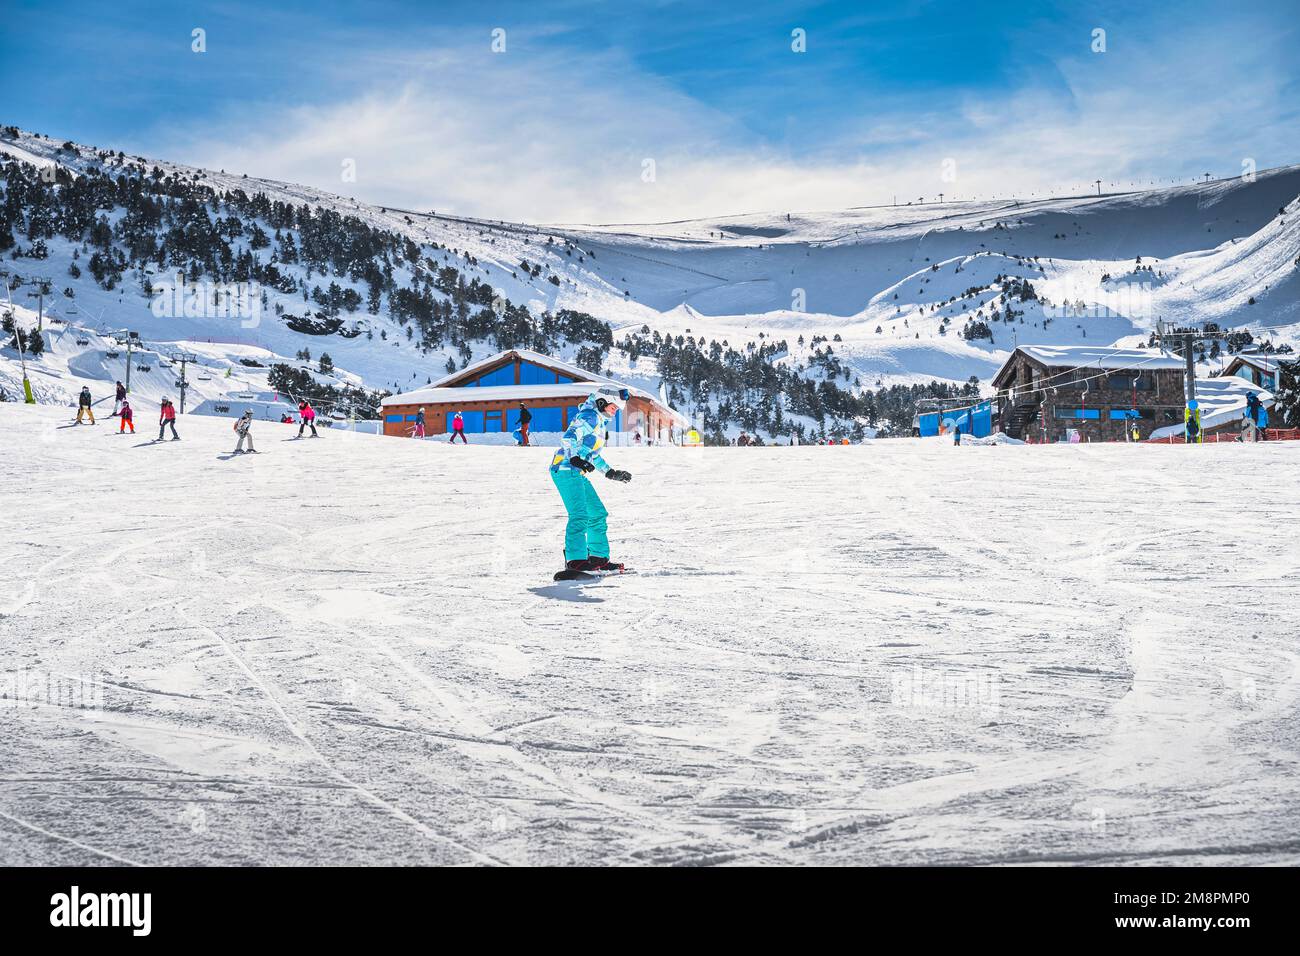 Donna, principiante snowboarder imparare a guidare su uno snowboard.  Vacanze invernali sugli sci a El Tarter, Grandvalira, Andorra, Pirenei Foto  stock - Alamy